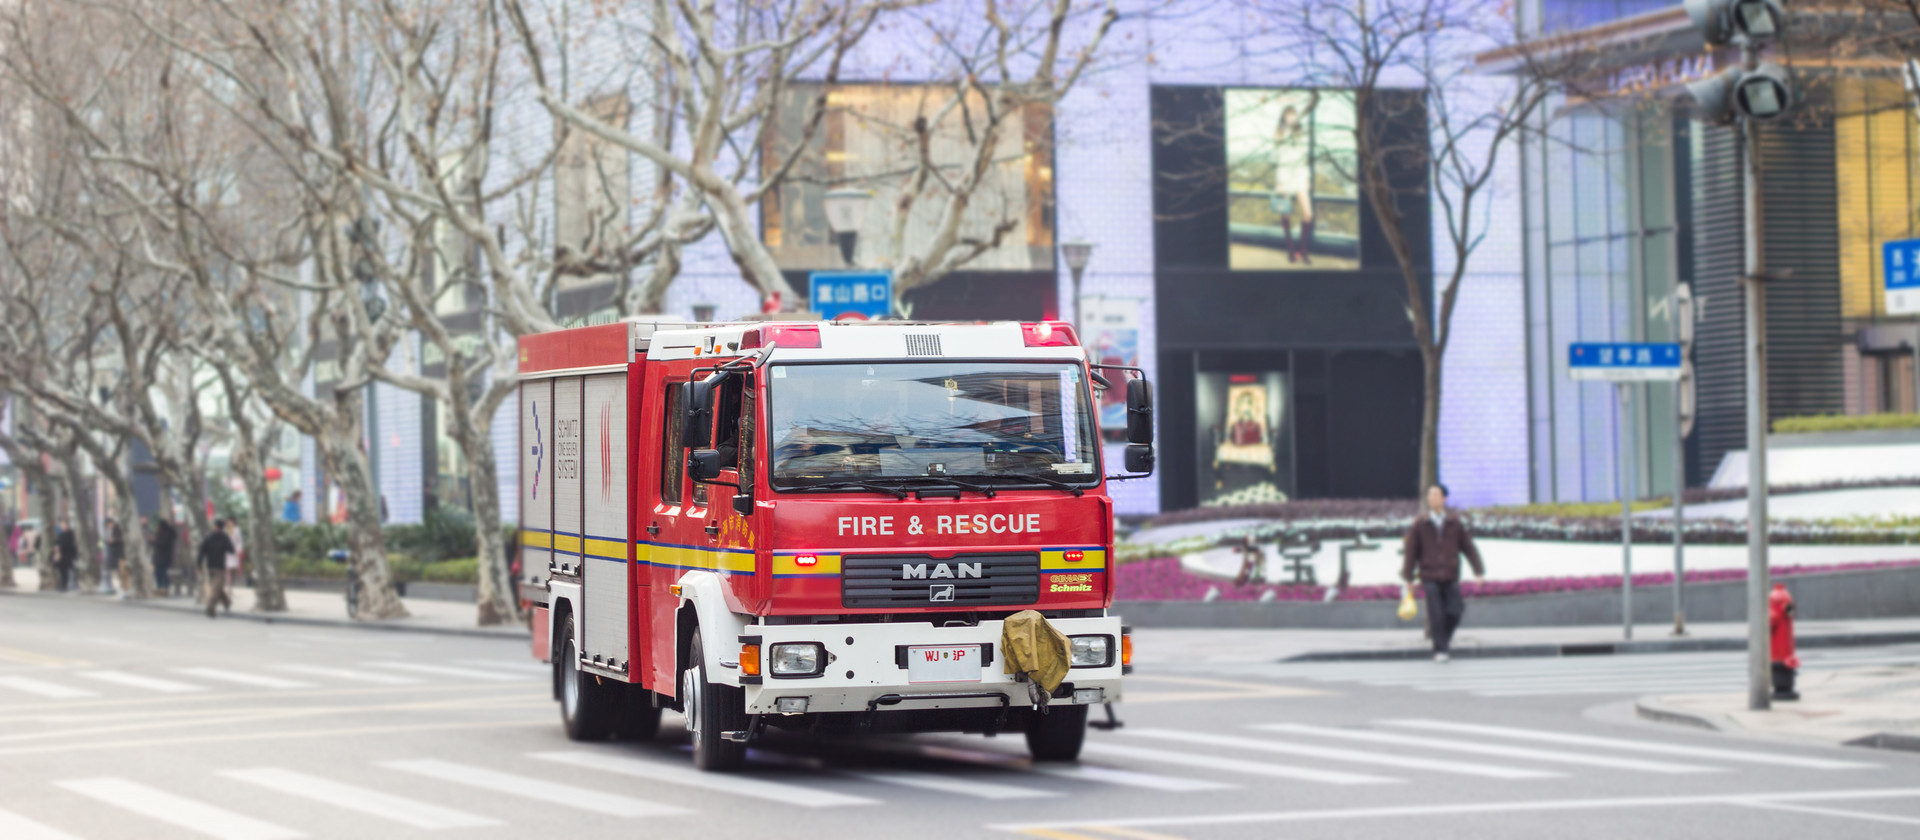 消防事故案例分析与实操演练